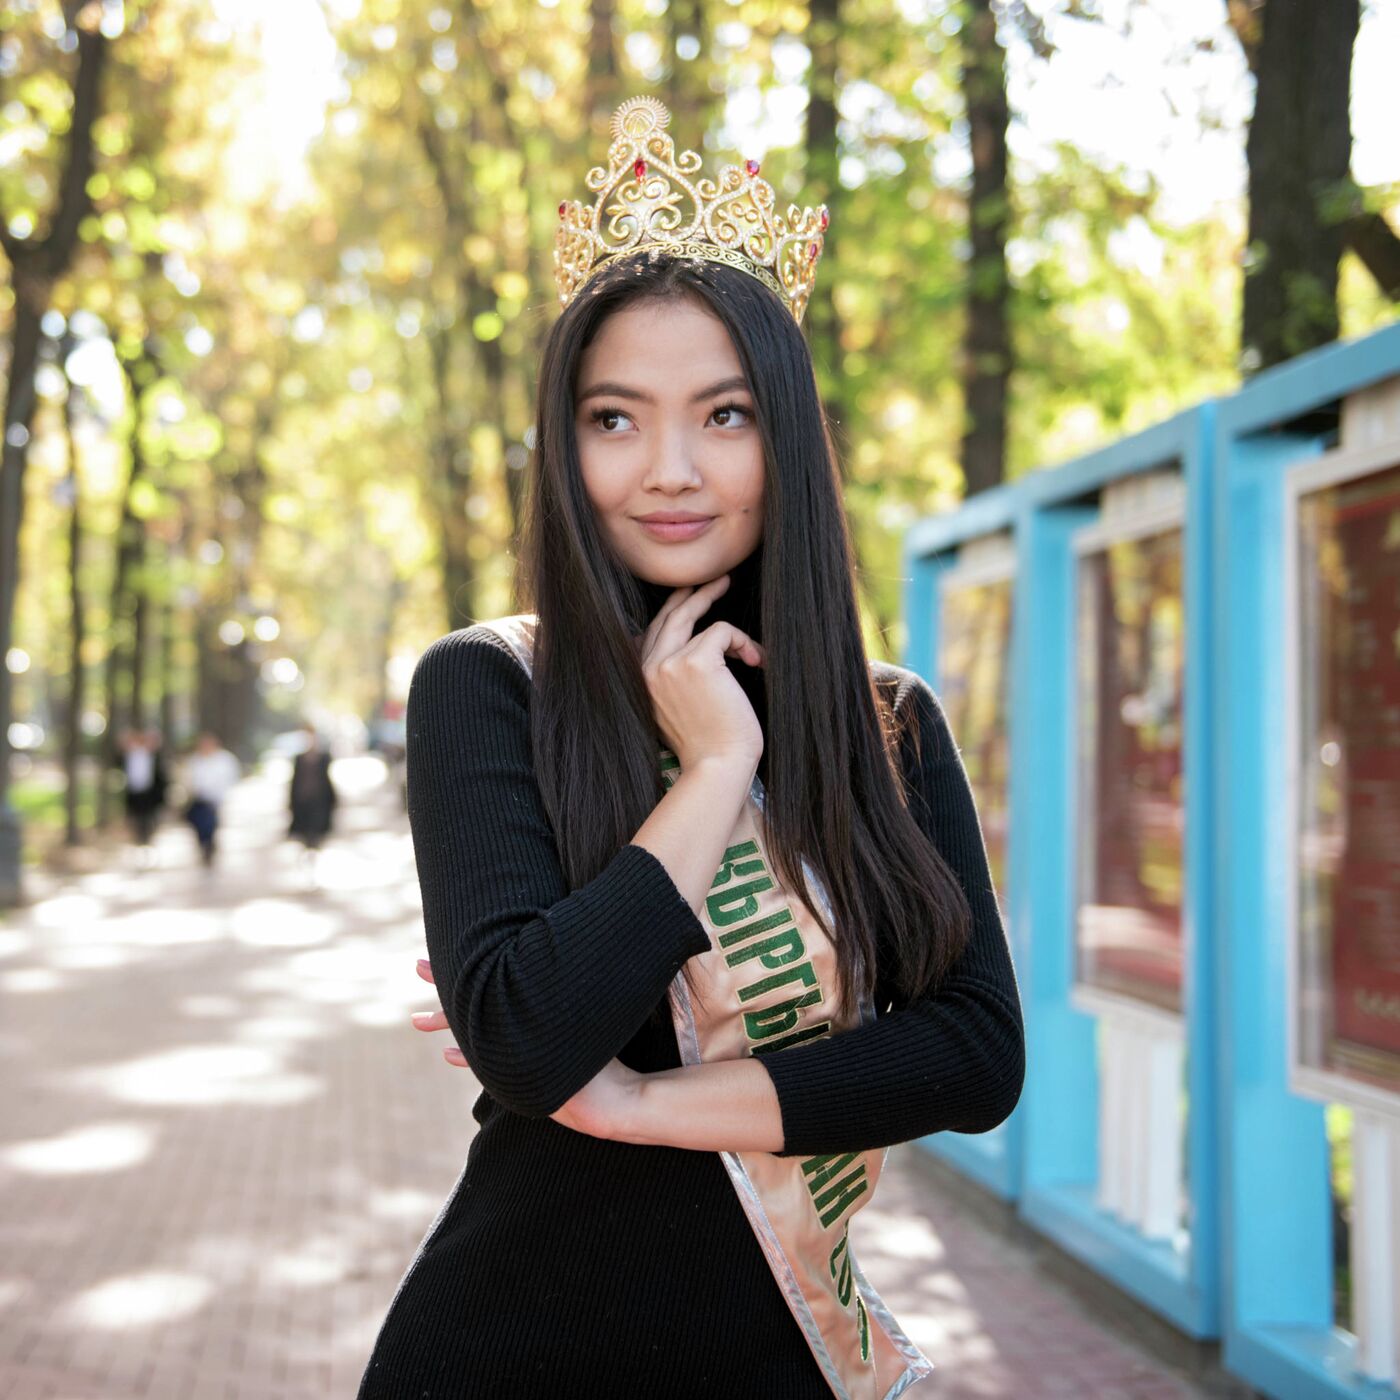 Отцу не нравилось, что я работаю моделью, — самая красивая девушка  Кыргызстана - 20.10.2019, Sputnik Кыргызстан